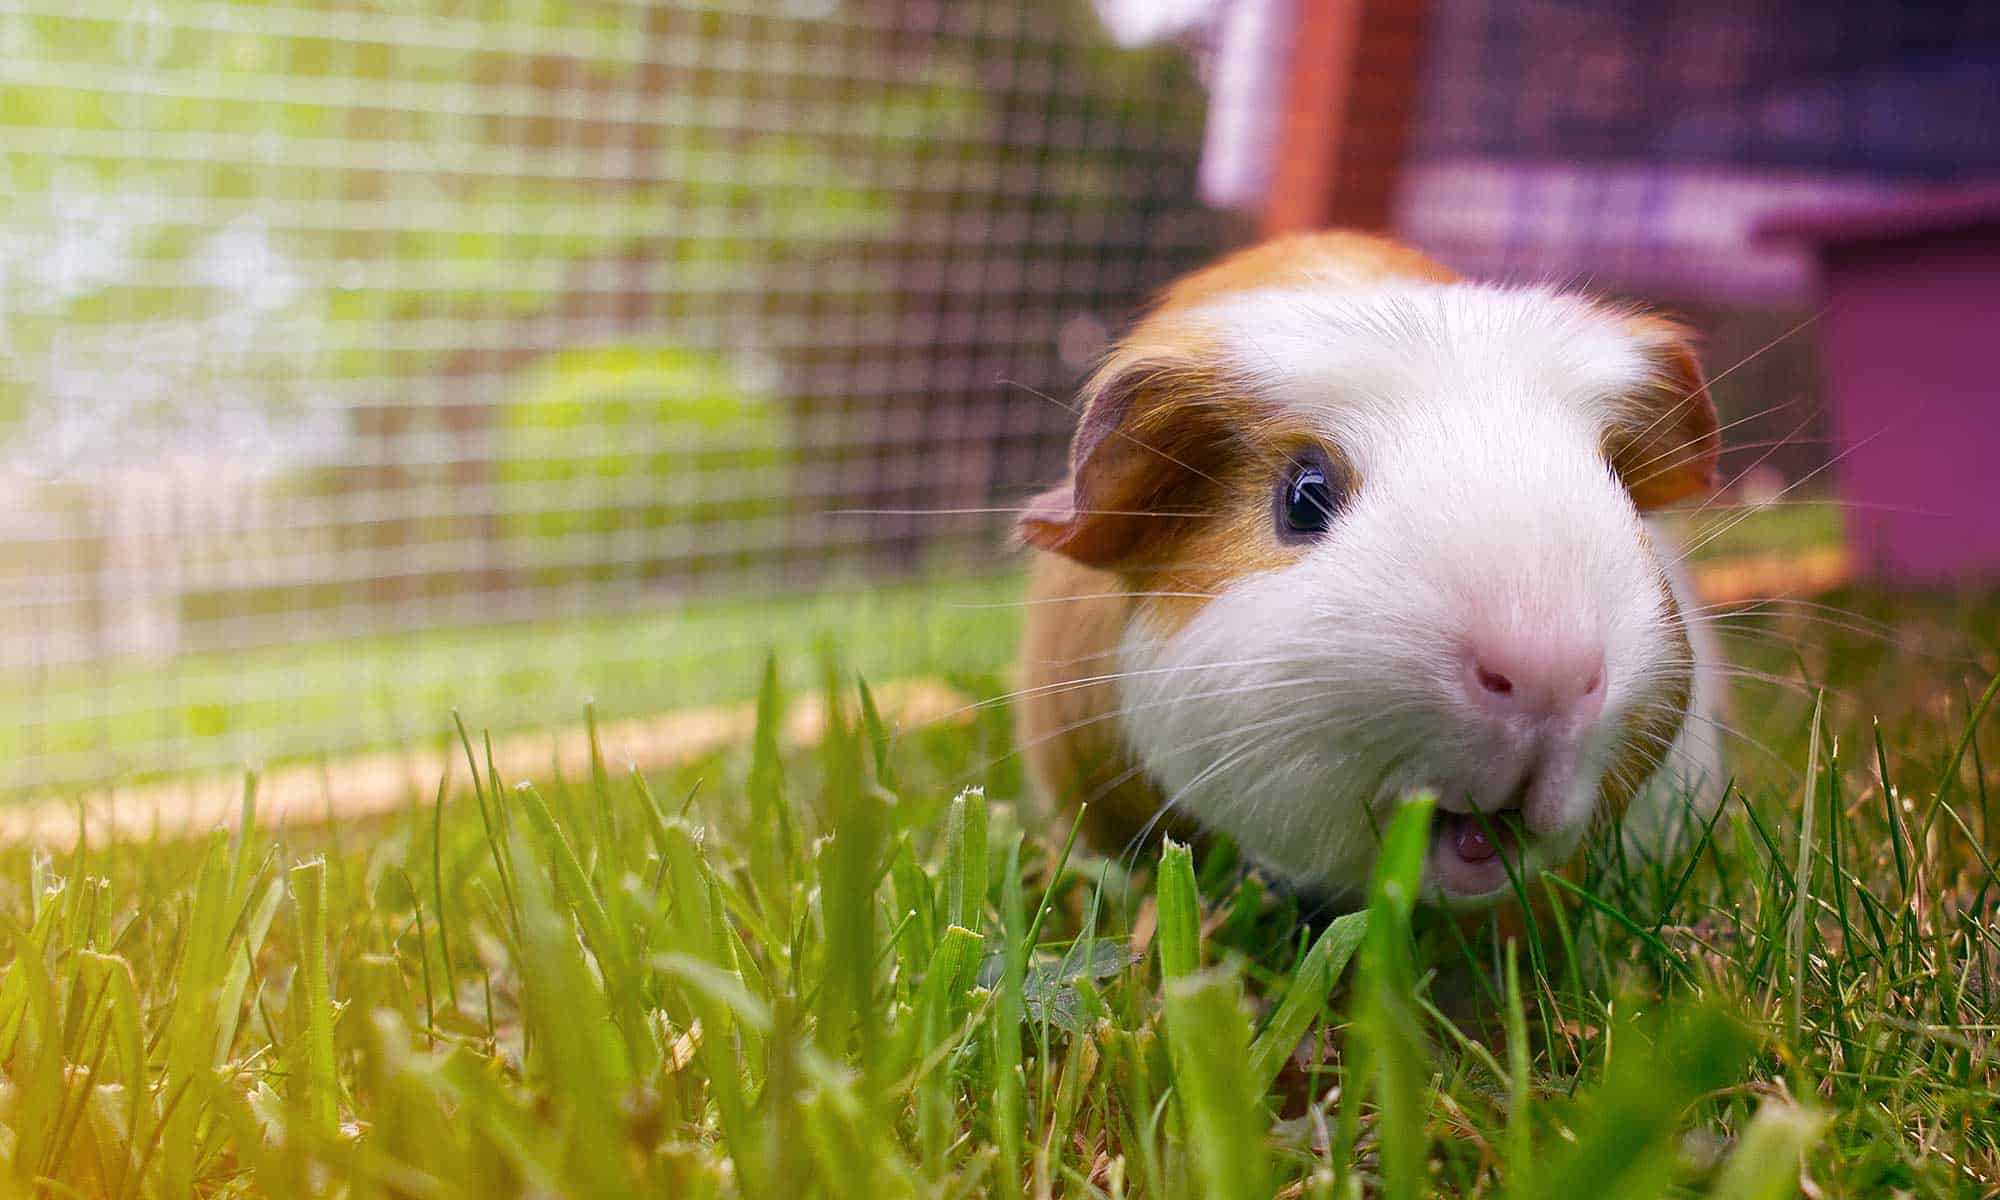 A guinea pig in grass